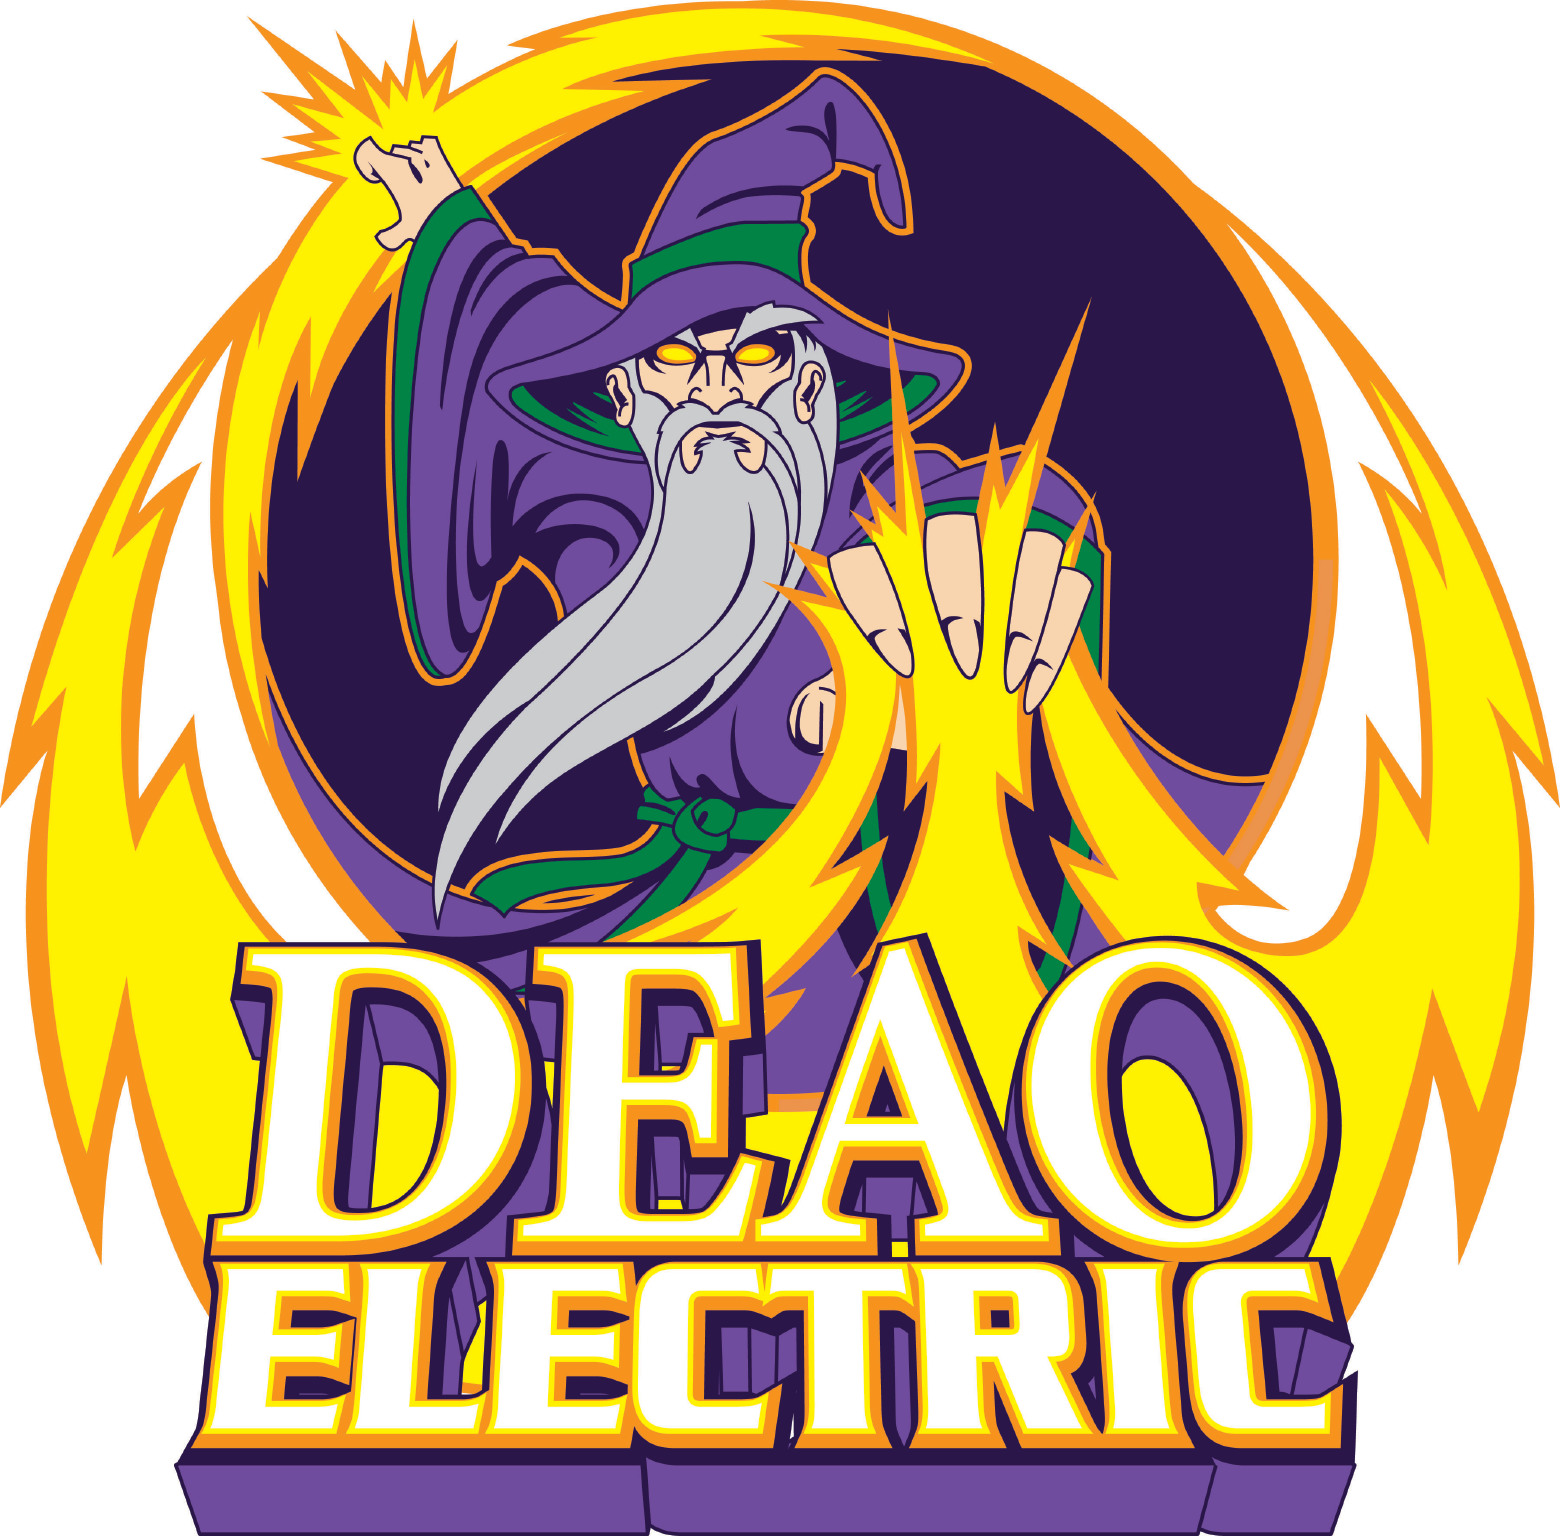 Christopher A. Deao Electrician, LLC Logo